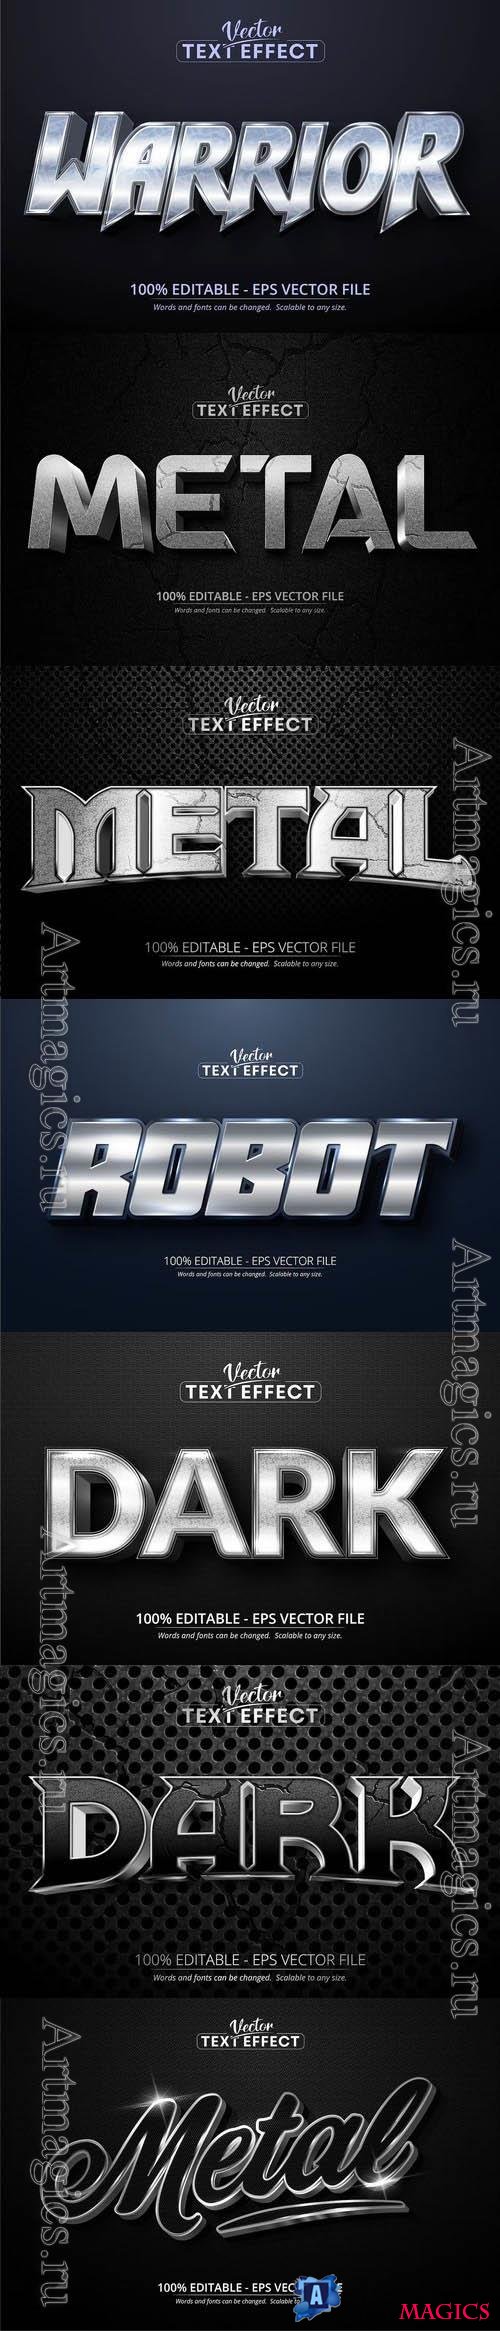 Vector 3d text editable, text effect font vol 121  